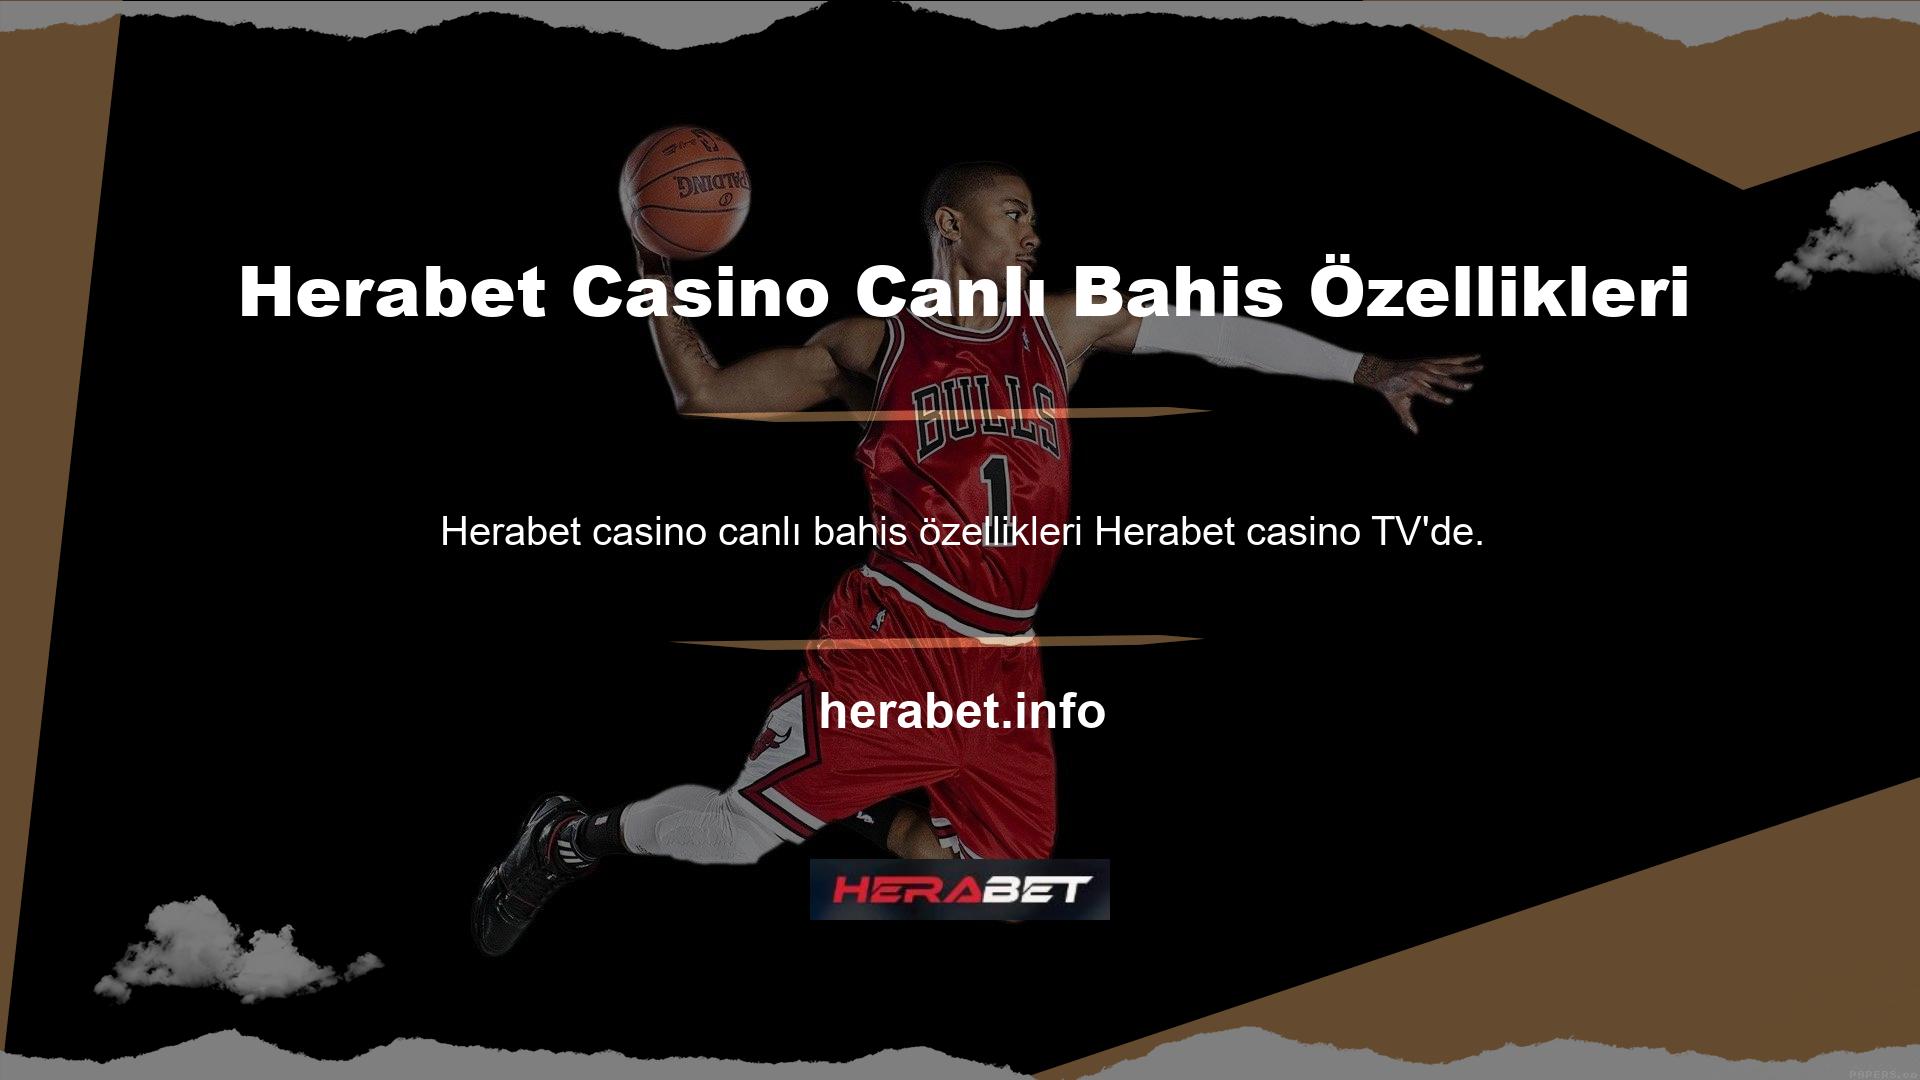 Casino ve slot alanında kullanıcıların böyle bir seçeneği yoktur ancak bahis sektöründe Herabet casino'nun canlı bahis özelliğinden faydalanabilirler